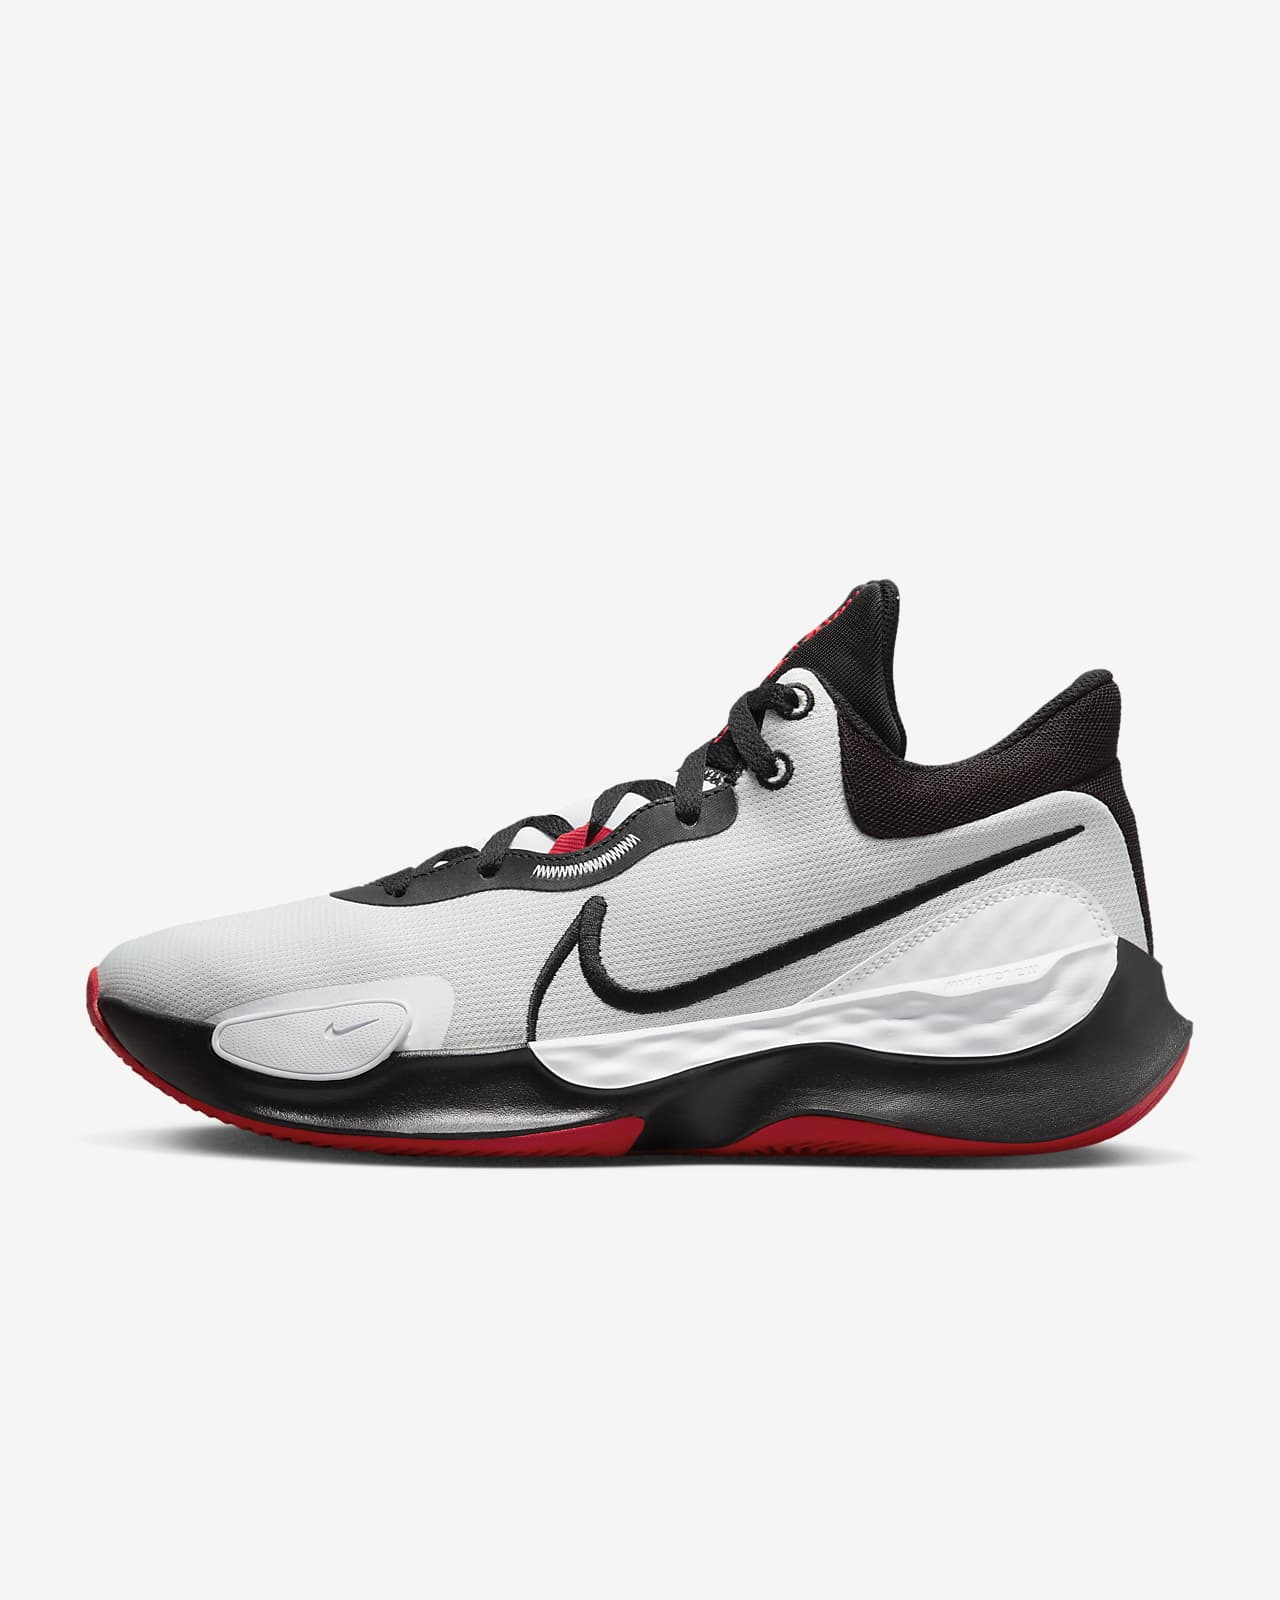 Nike Elevate 3 籃球鞋